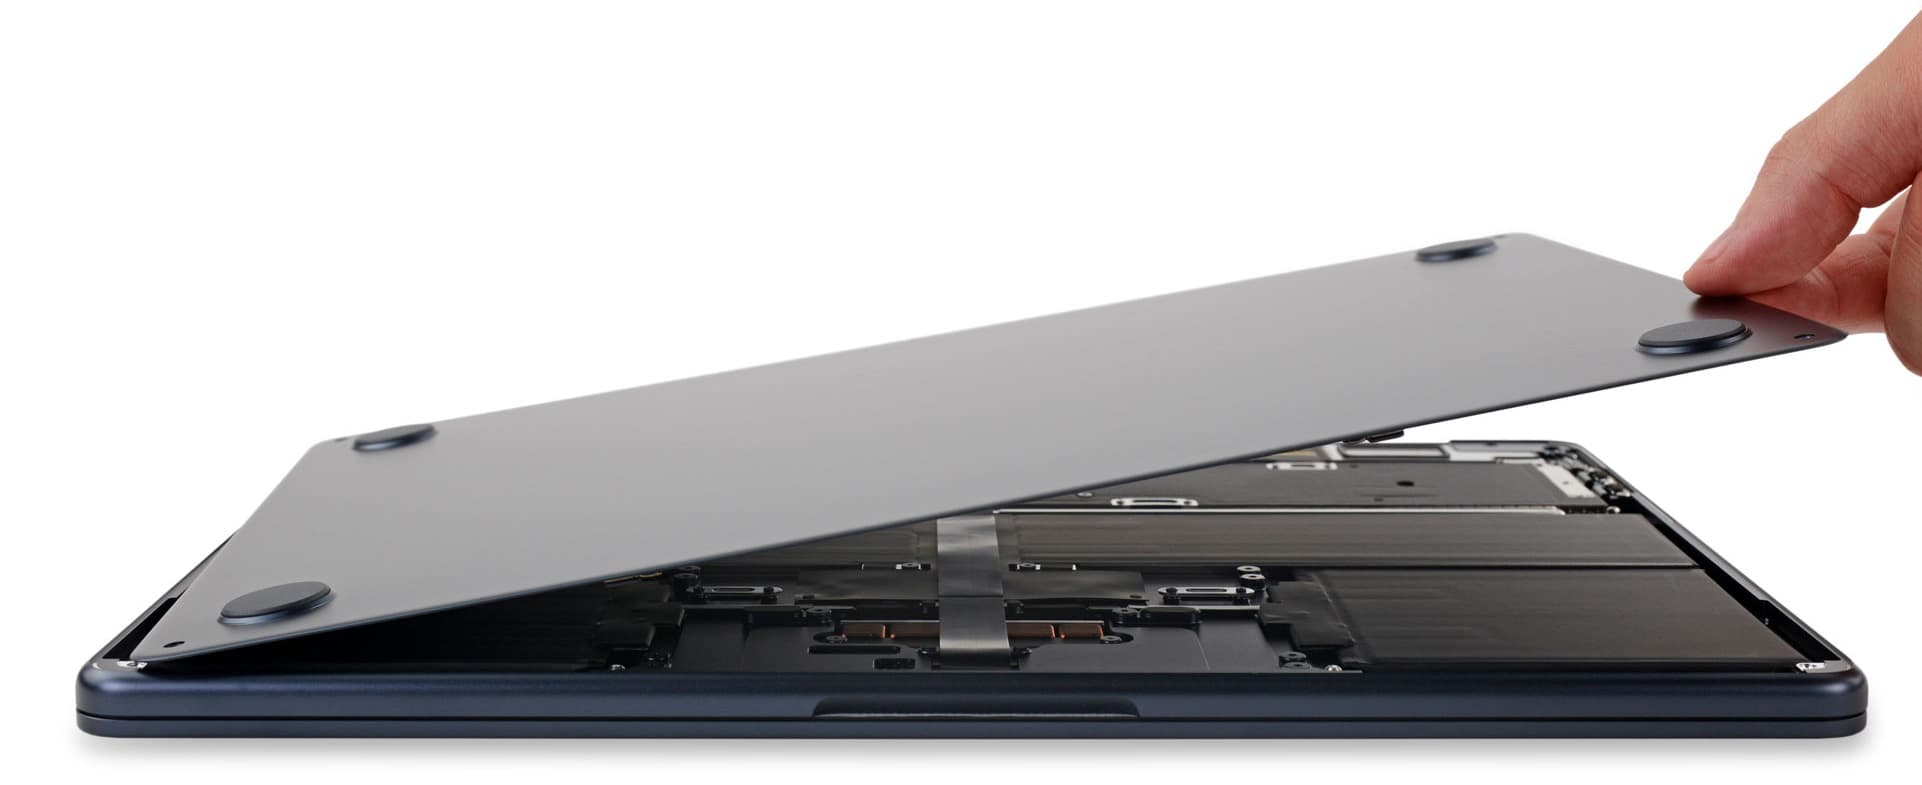 M2 MacBook Air 拆解總結：一台少了散熱器超輕薄筆電1